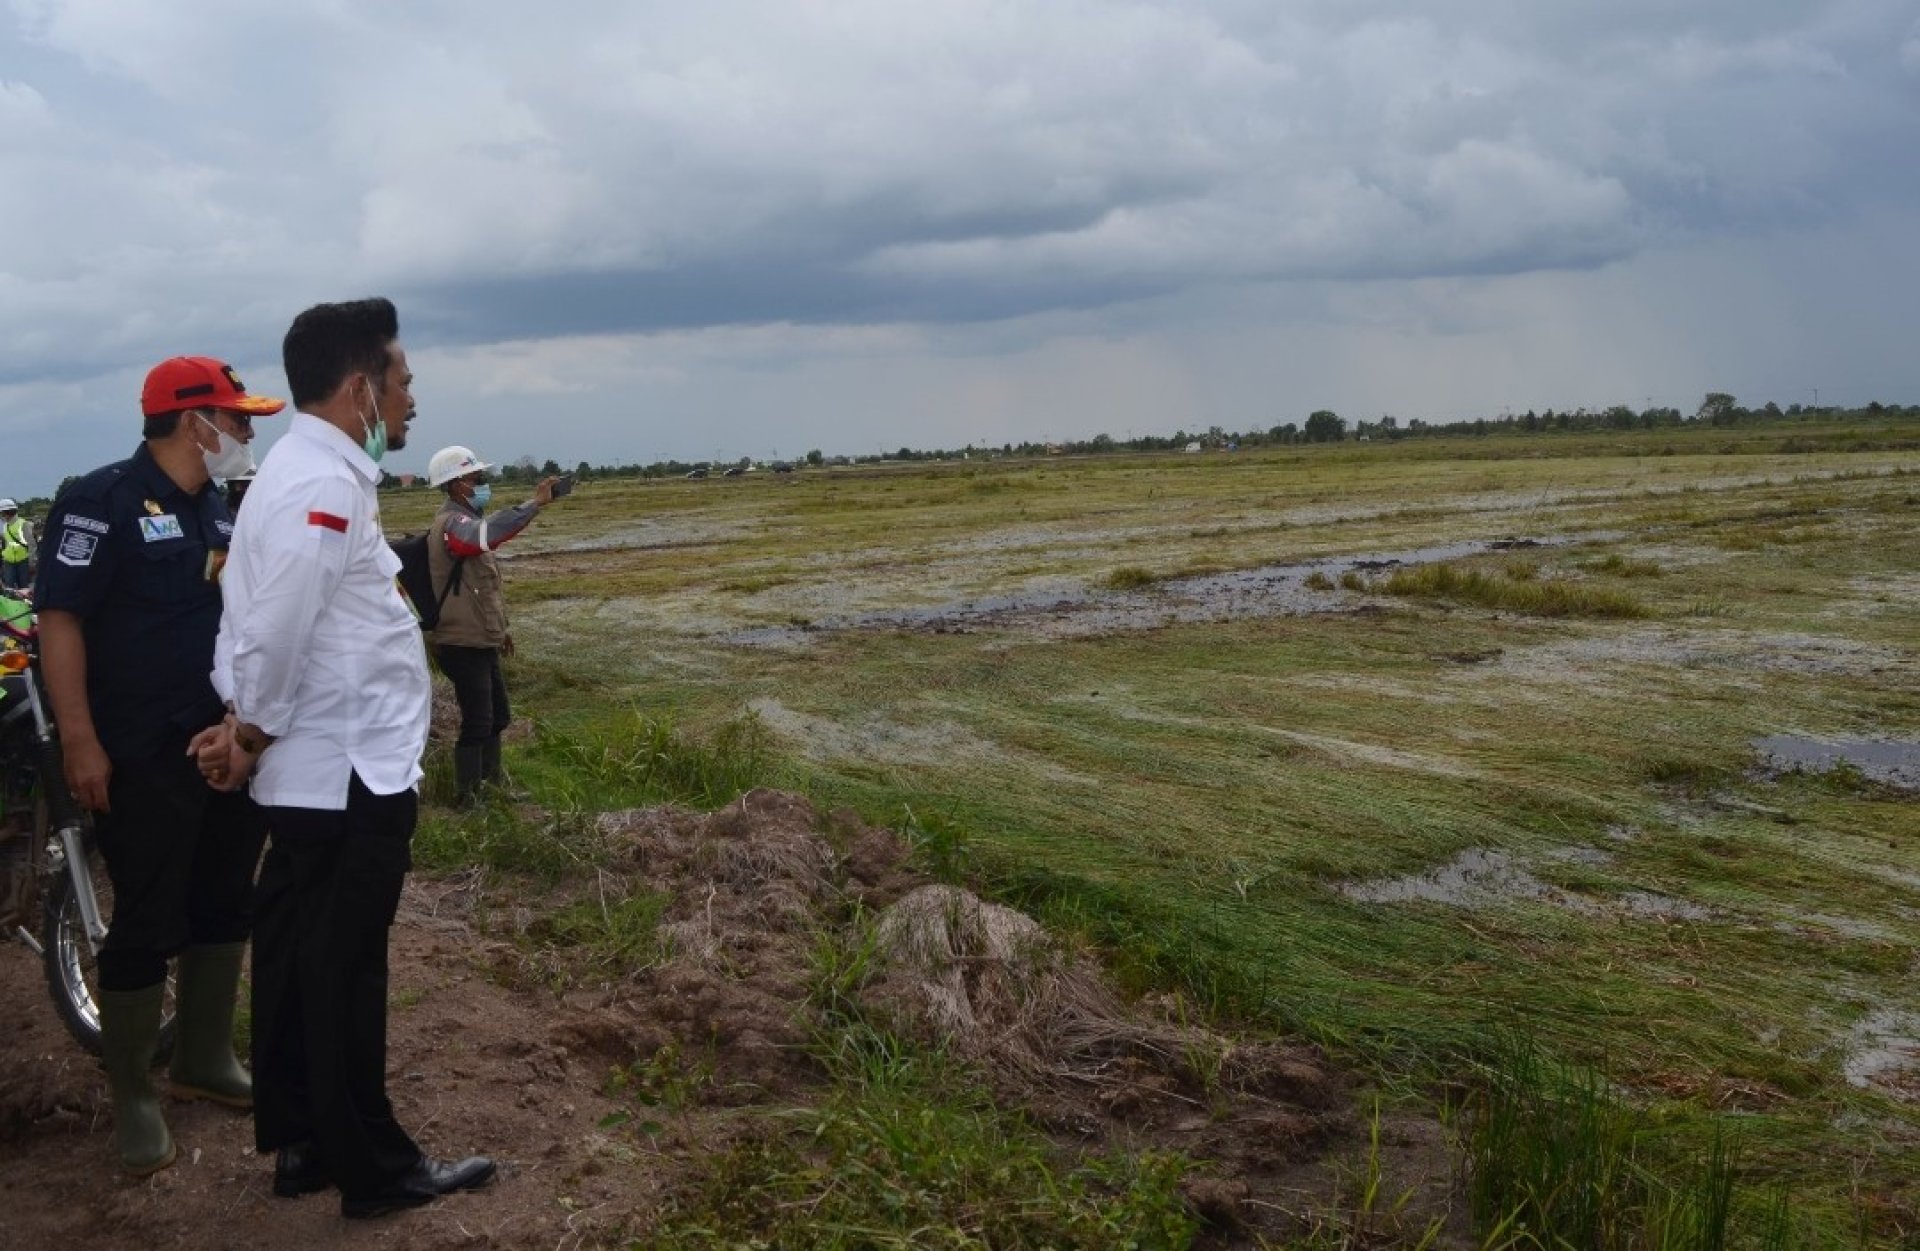 Tinjau Progres Lahan Food Estate di Kapuas, Menteri Pertanian Optimis Januari 2021 Bisa Mulai Tanam